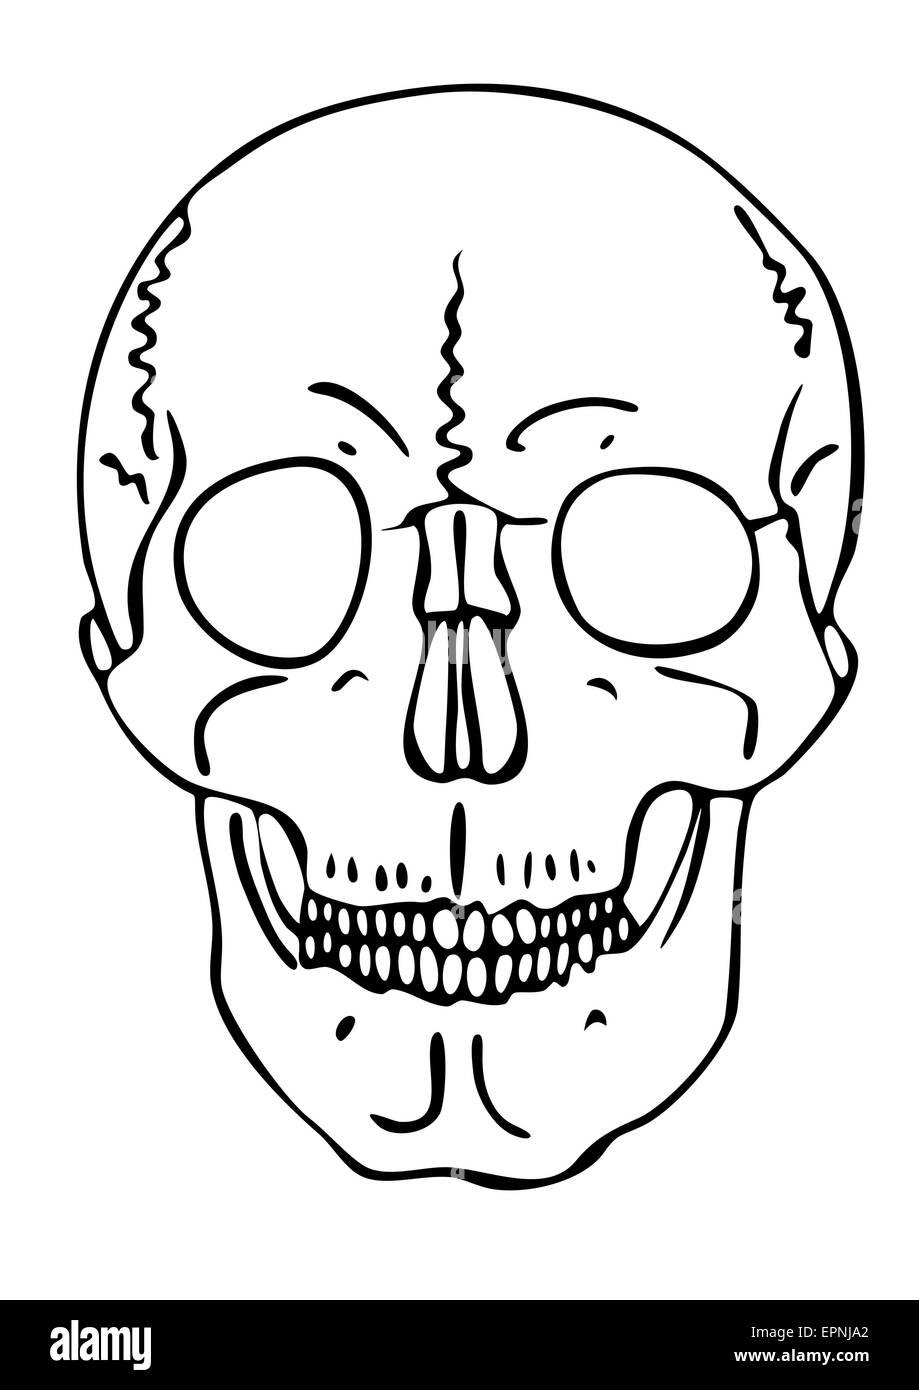 skull - vector - warning symbol Stock Vector